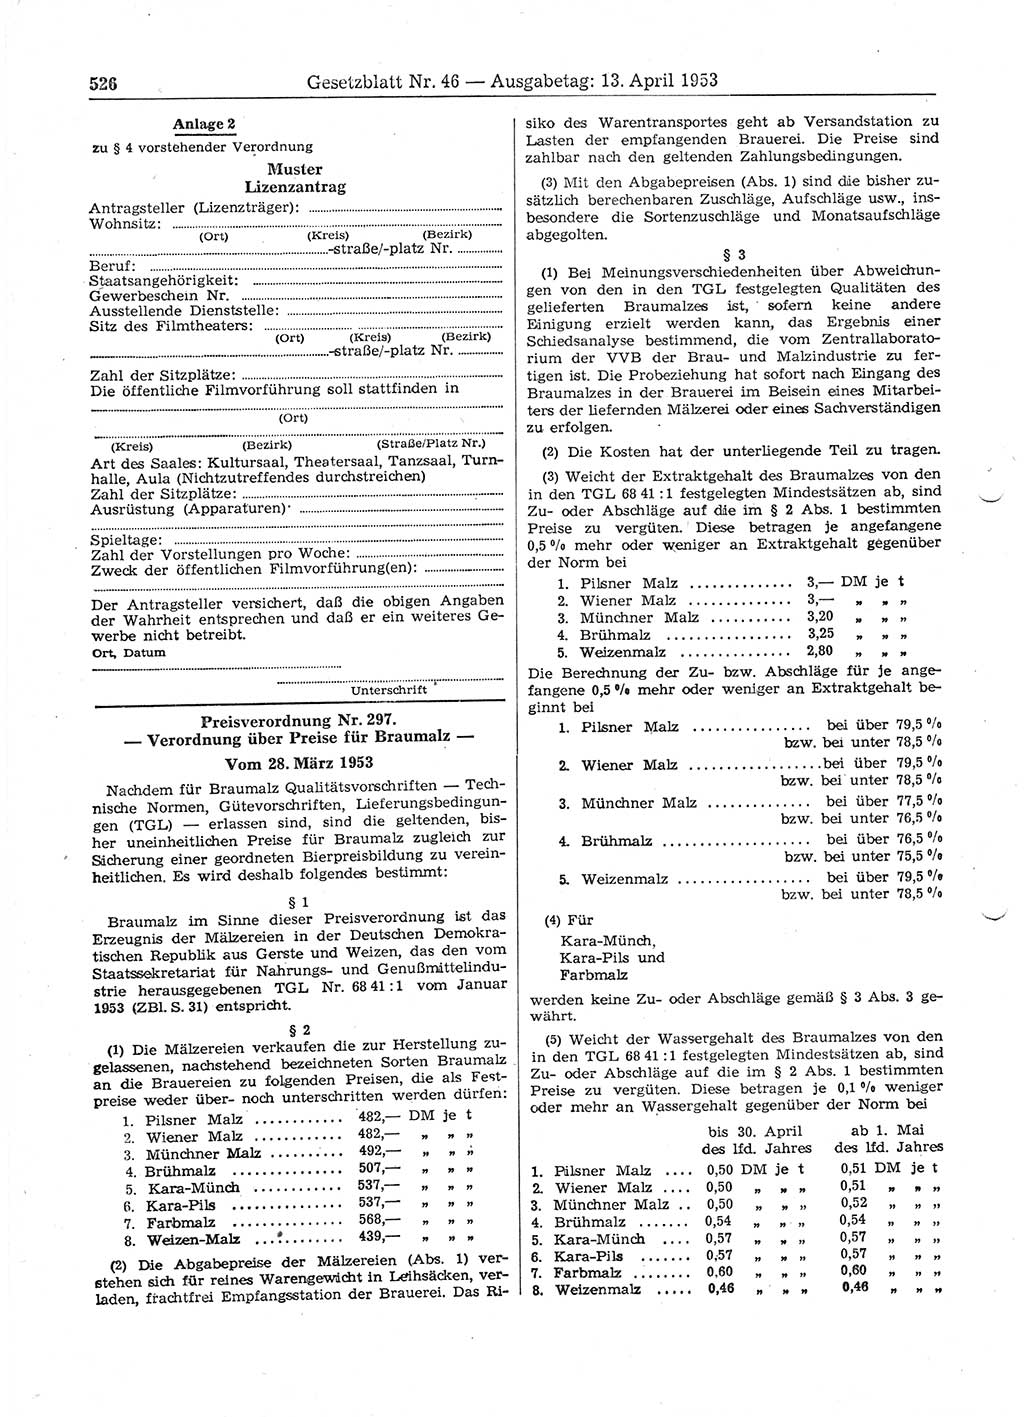 Gesetzblatt (GBl.) der Deutschen Demokratischen Republik (DDR) 1953, Seite 526 (GBl. DDR 1953, S. 526)